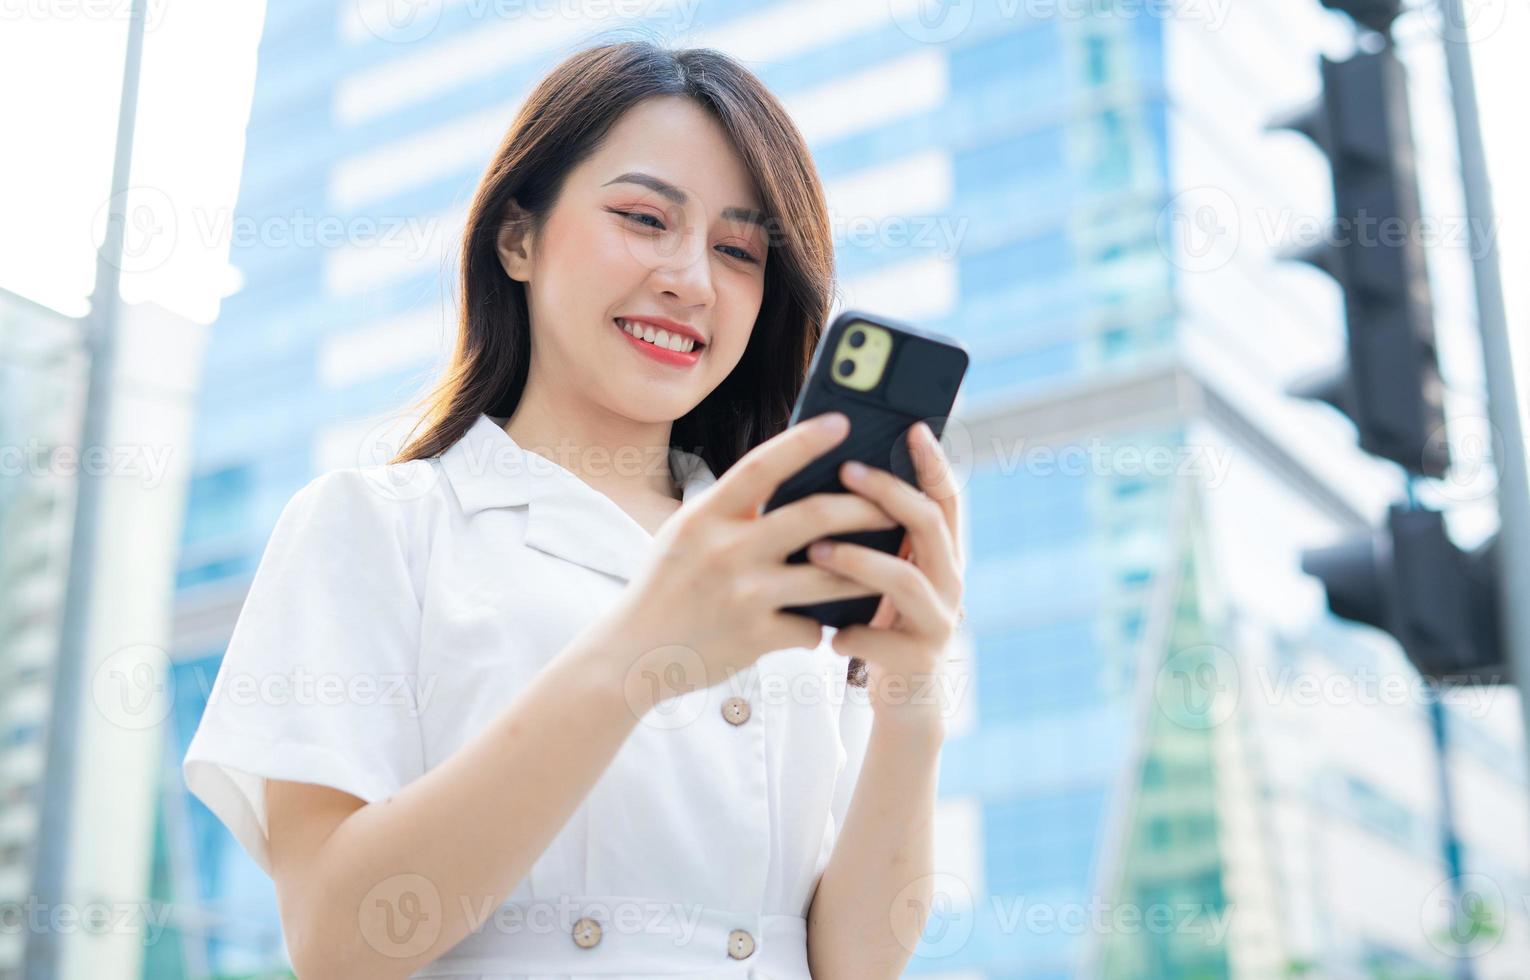 jeune femme asiatique marchant et utilisant un smartphone dans la rue photo